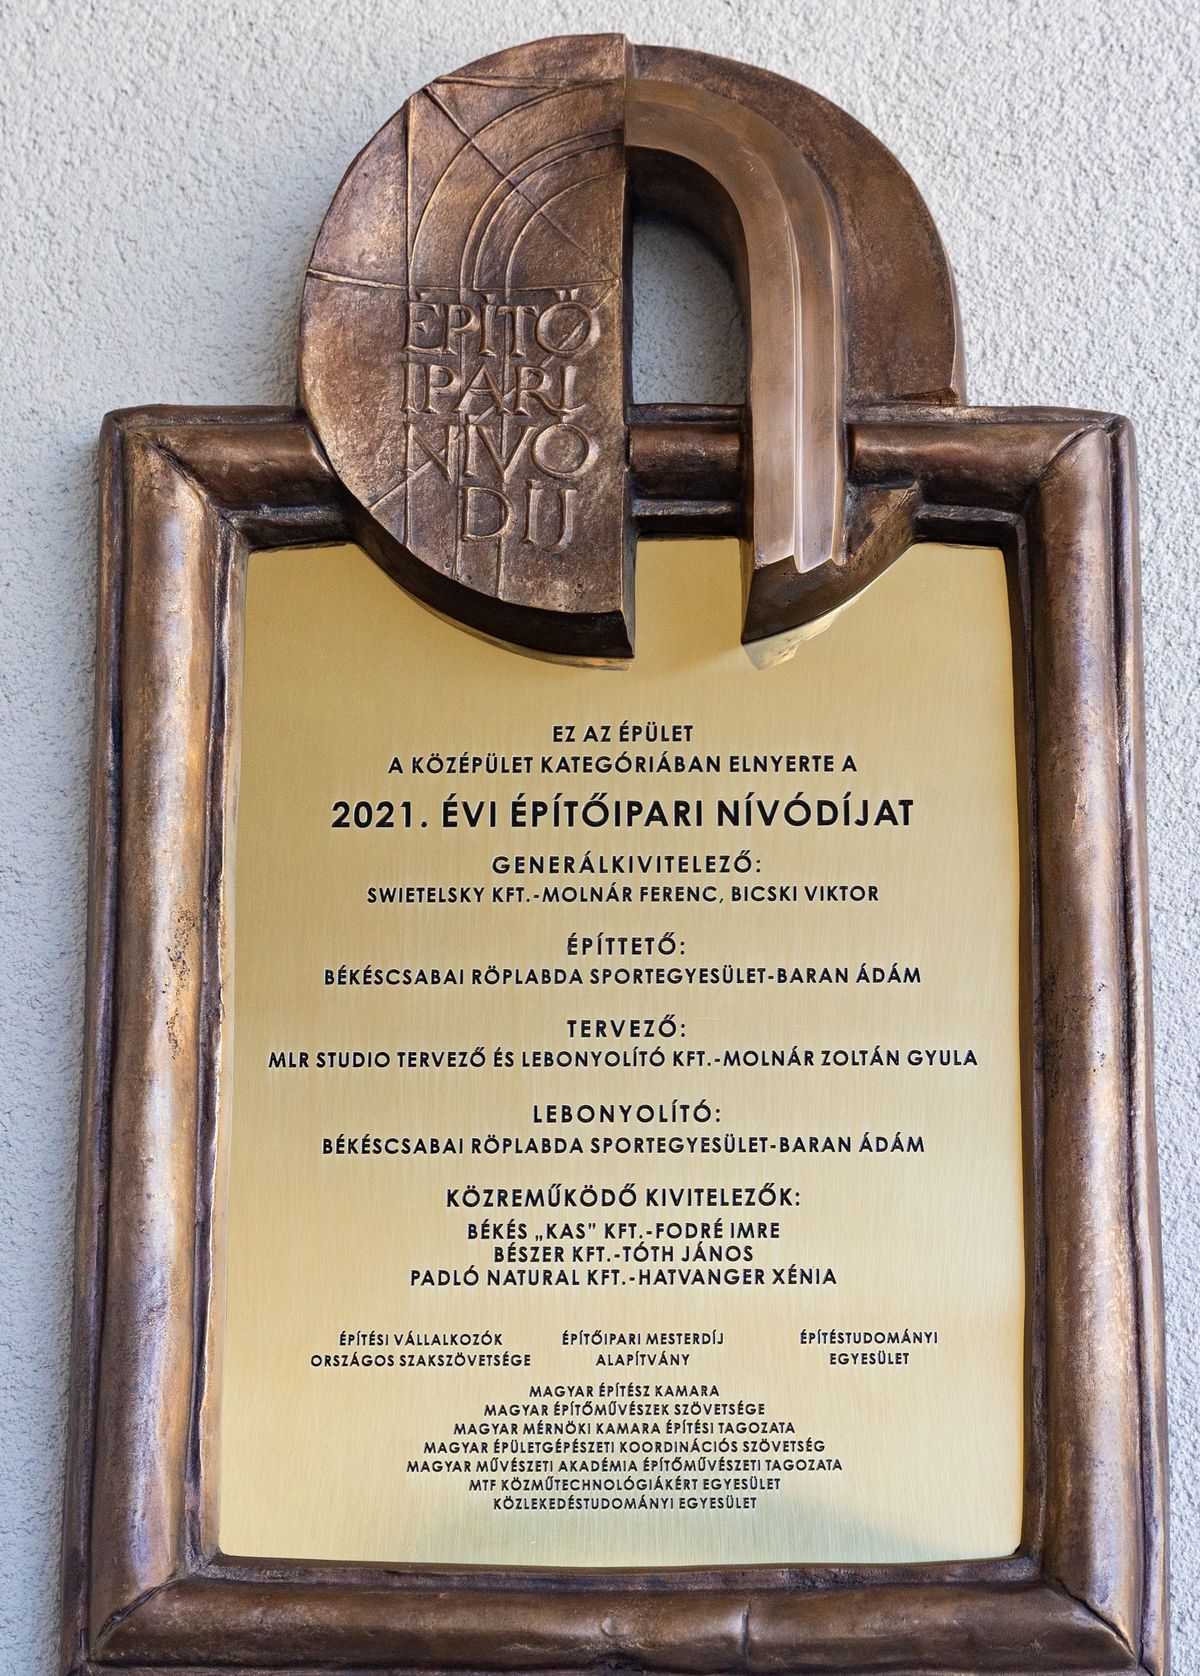 A Békéscsabai Röplabda Akadémia épülete nyerte meg a 2021. évi Építőipari Nívódíjat. Fotó: Imre György